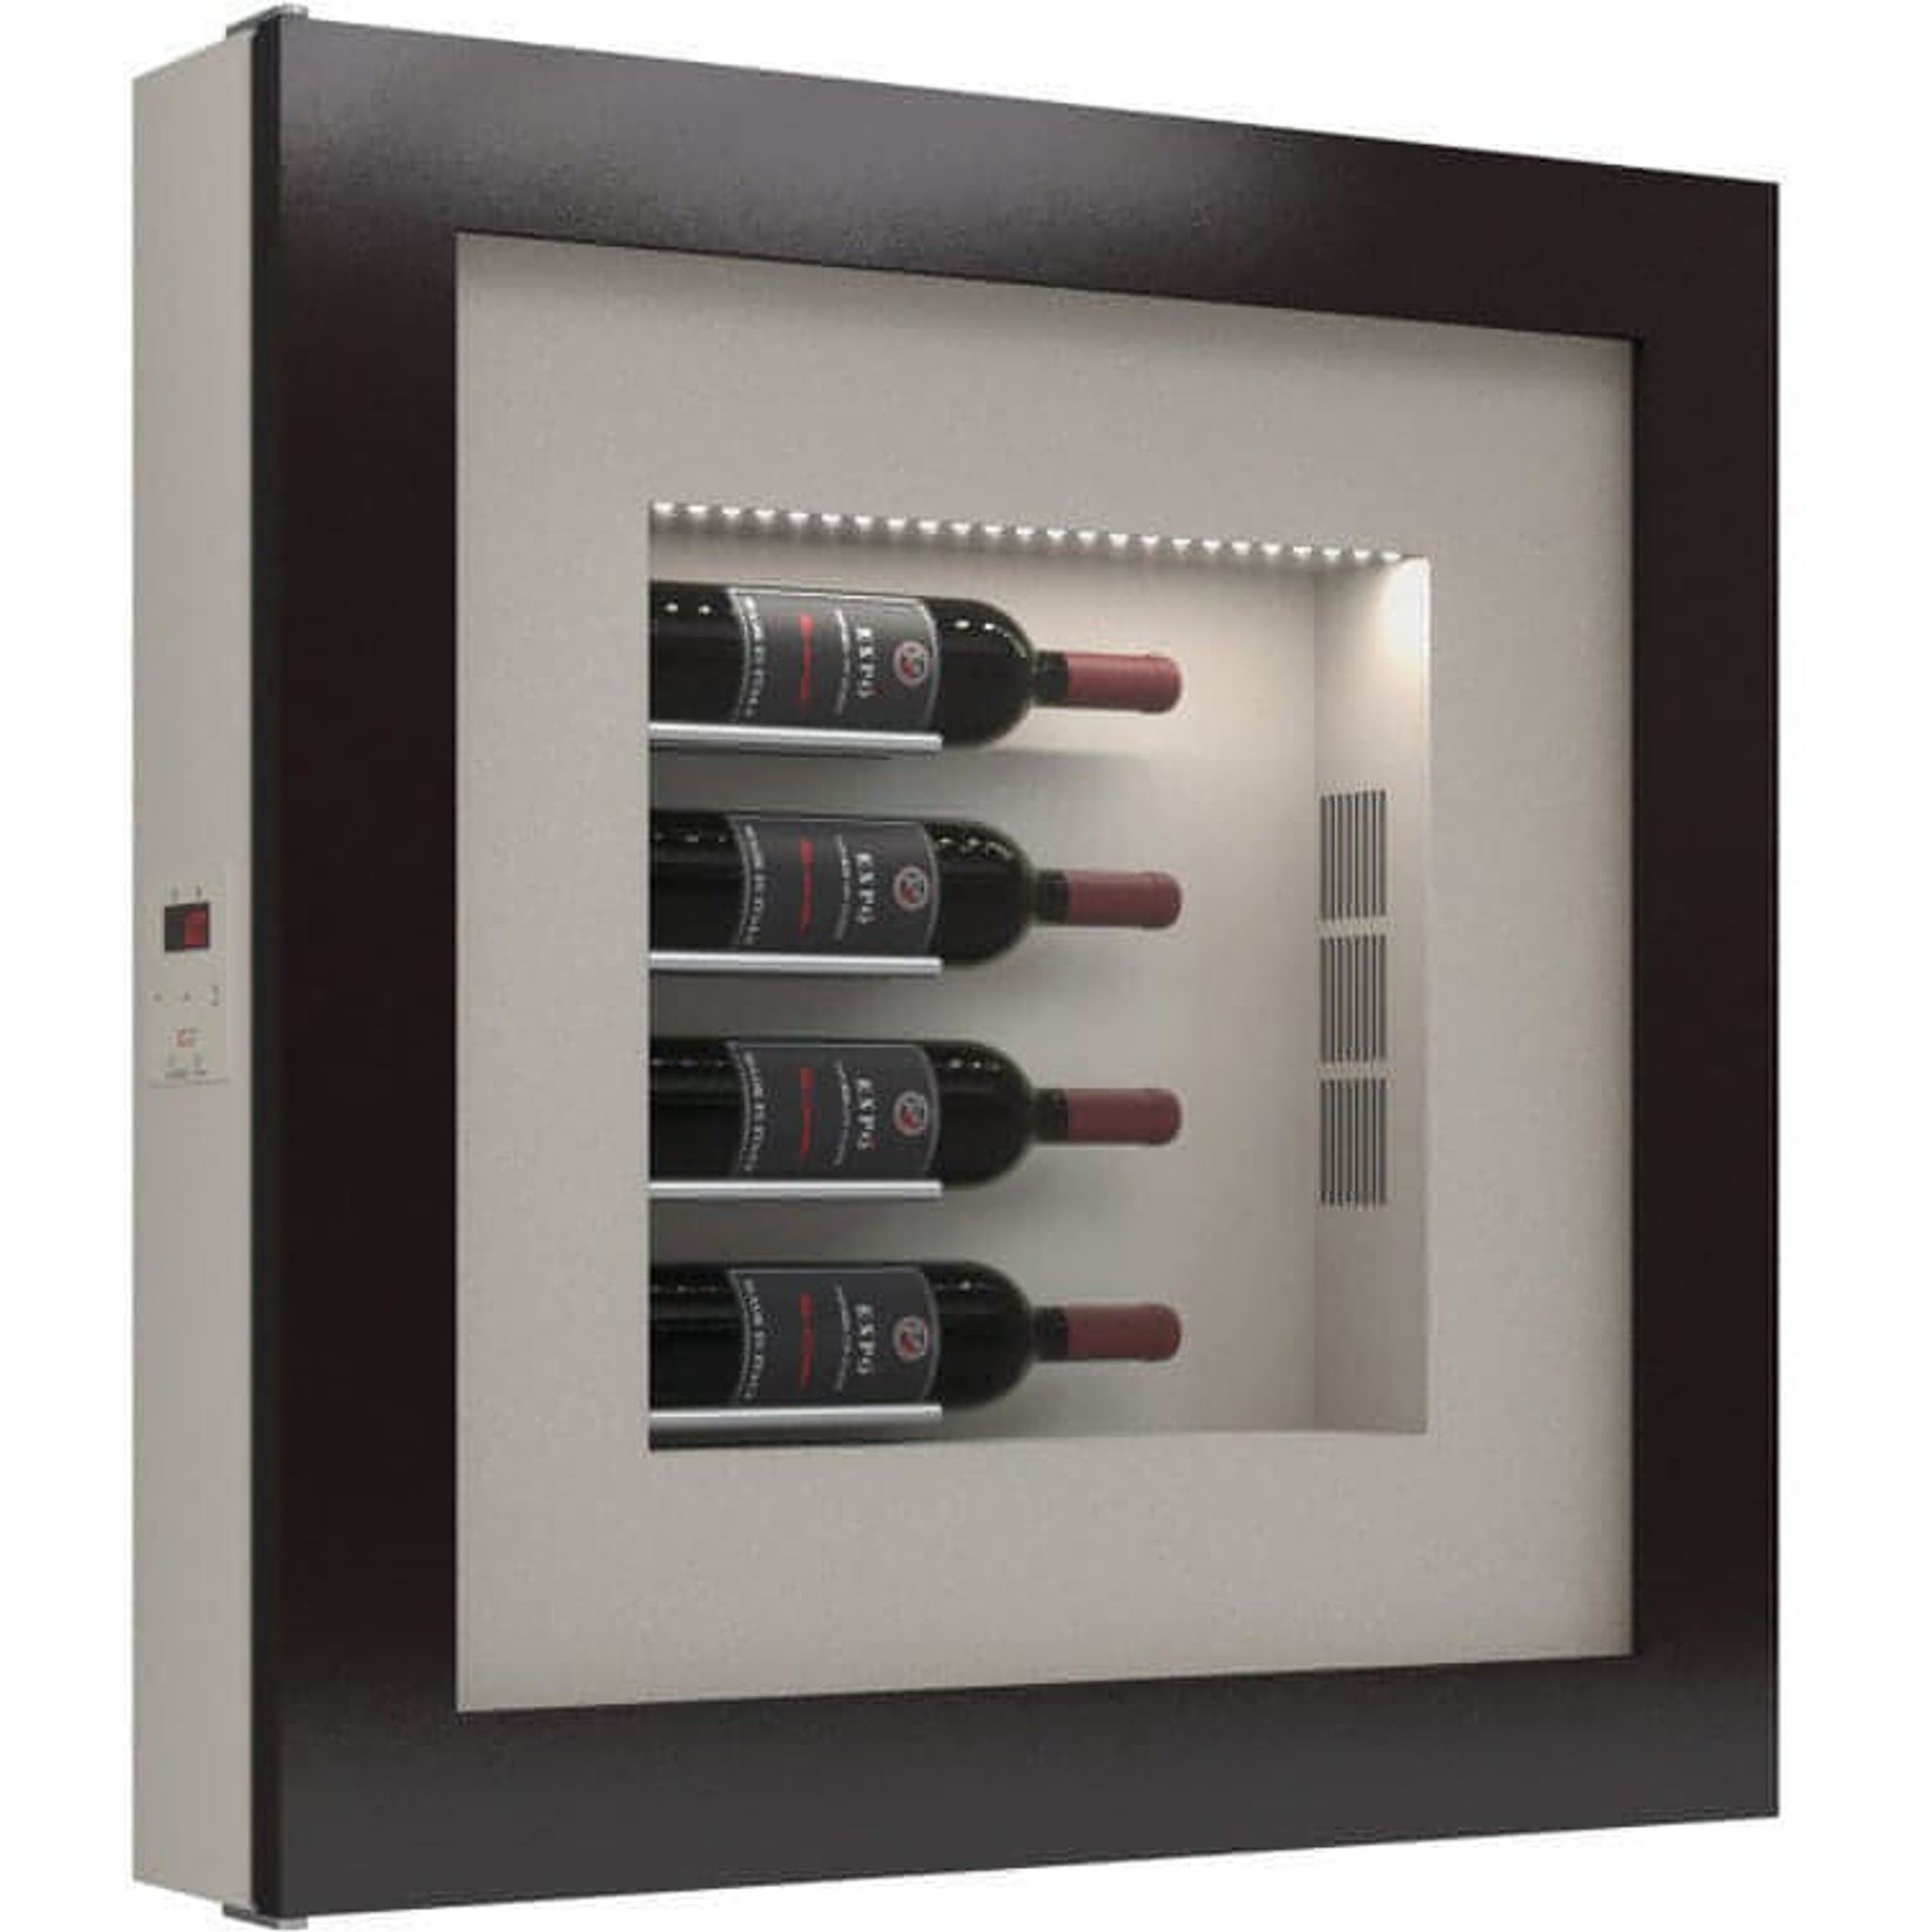 Quadro Vino - Wine Wall QV40 - 4 Bottle Display Unit